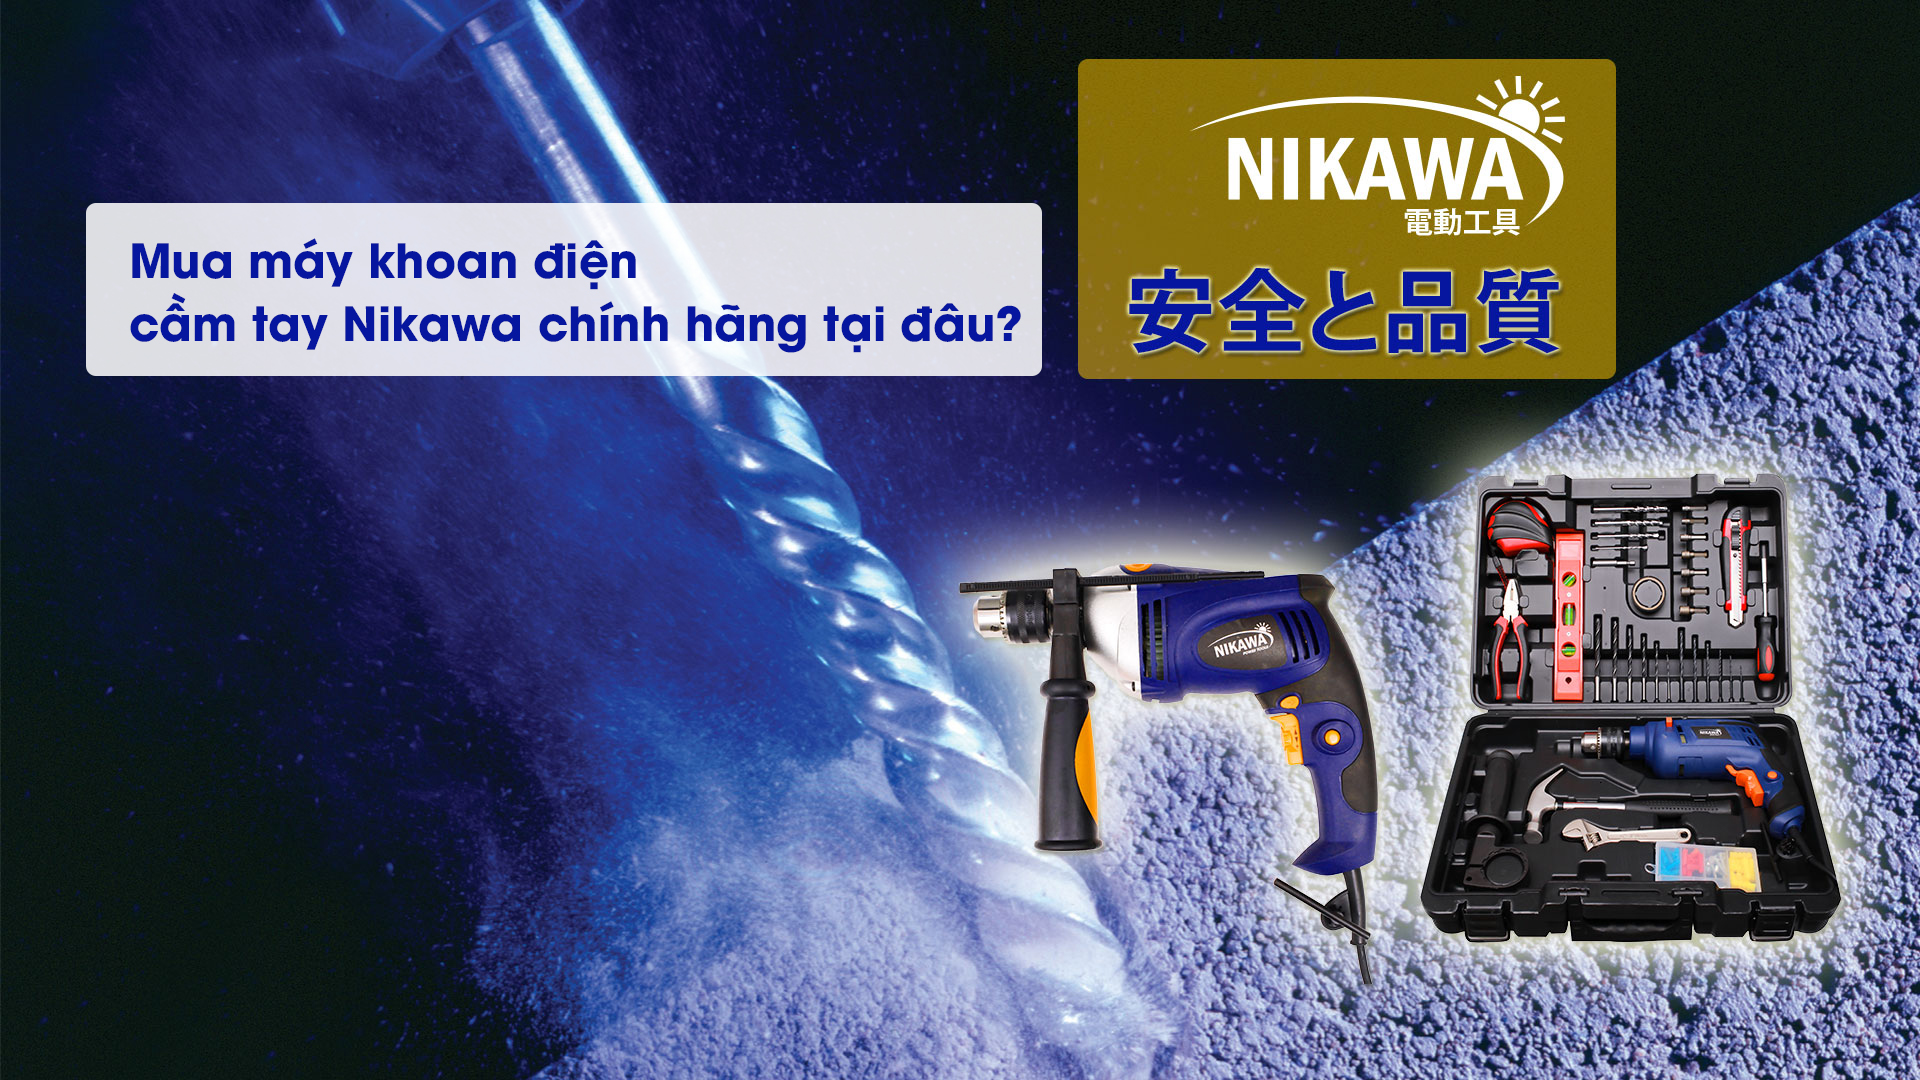 Mua máy khoan điện cầm tay Nikawa chính hãng tại đâu?